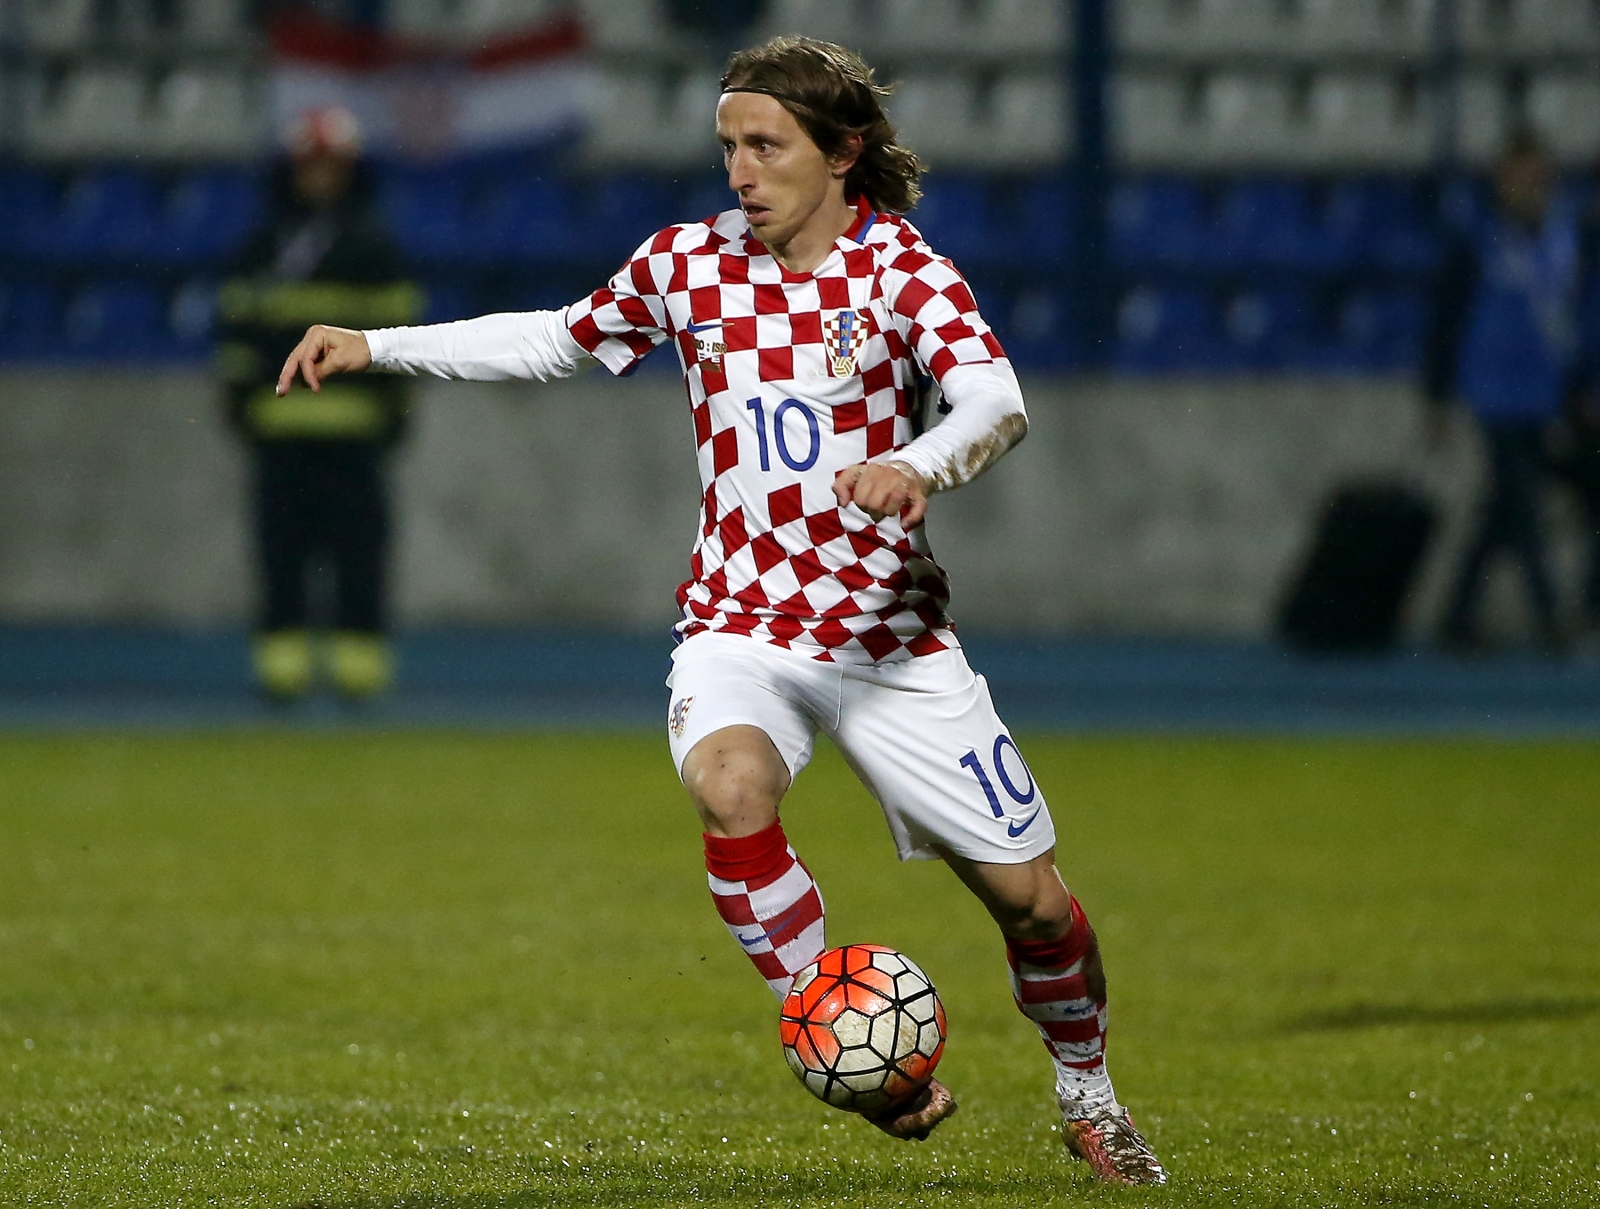 Euro 2016 player to watch Croatia's Luka Modric hoping to become an